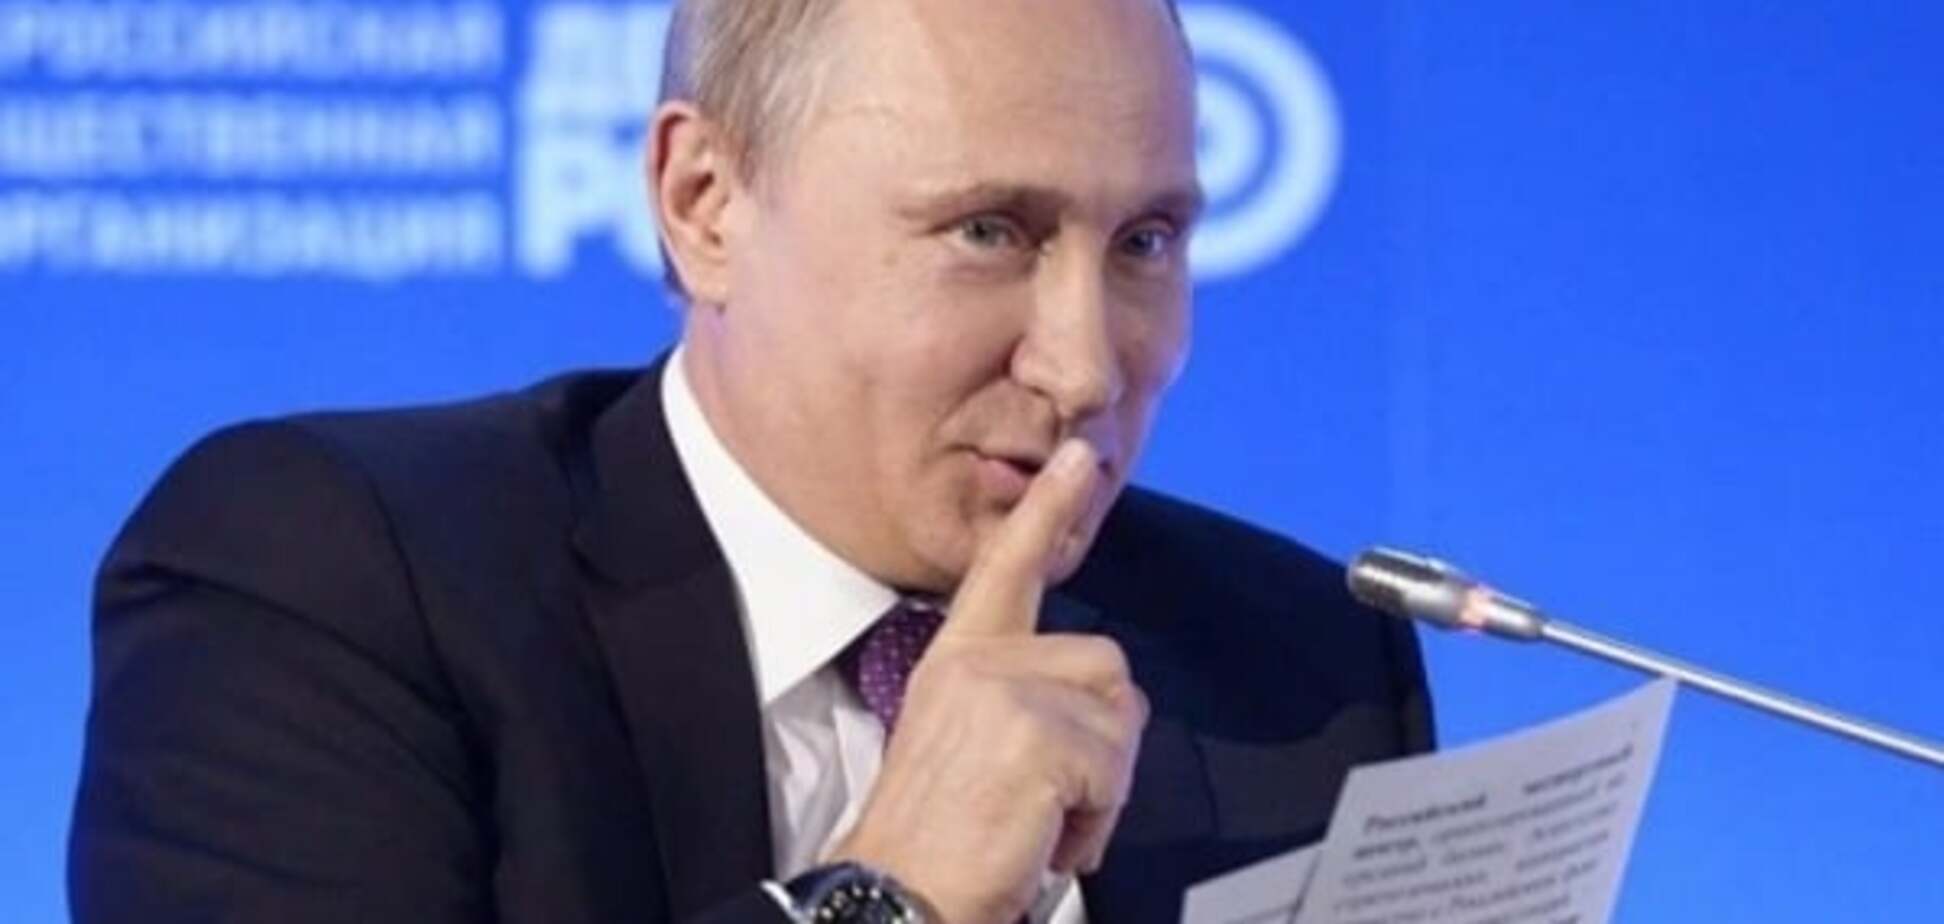 Більше в рази: Слава Рабинович повідав про розмір 'багатств' Путіна